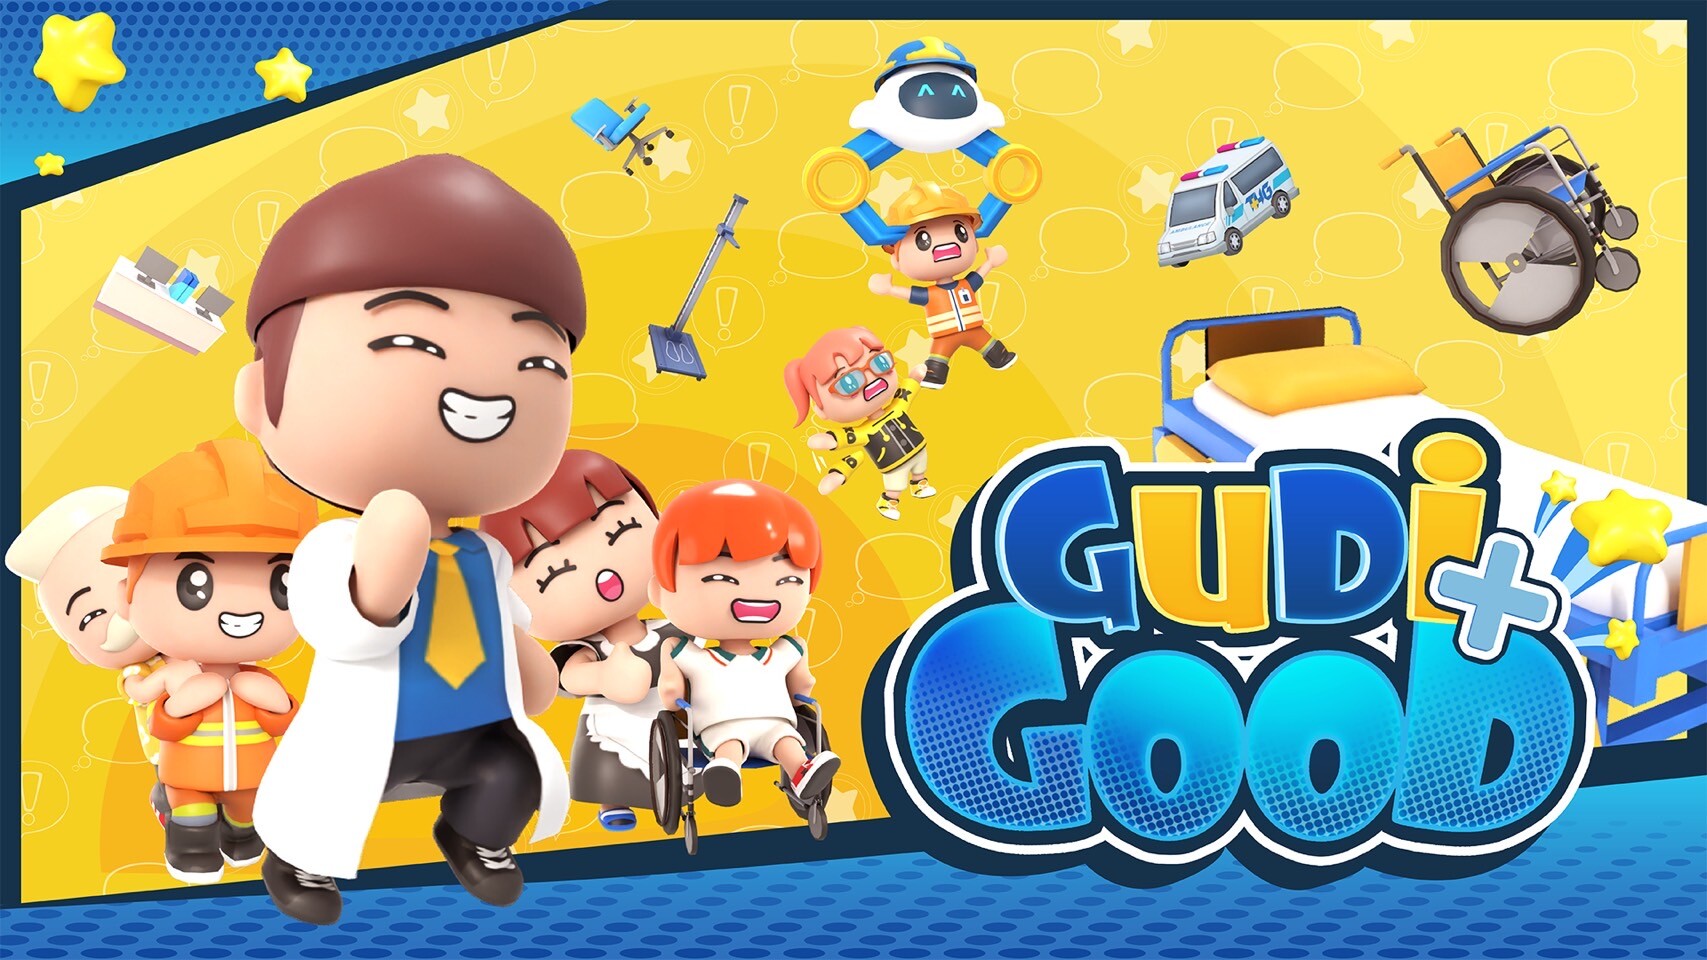 THG เปิดตัว "Gudi...Good" แอปฯ เกมเสริม EQ เด็ก ปลูกฝังหน้าที่พลเมืองดี